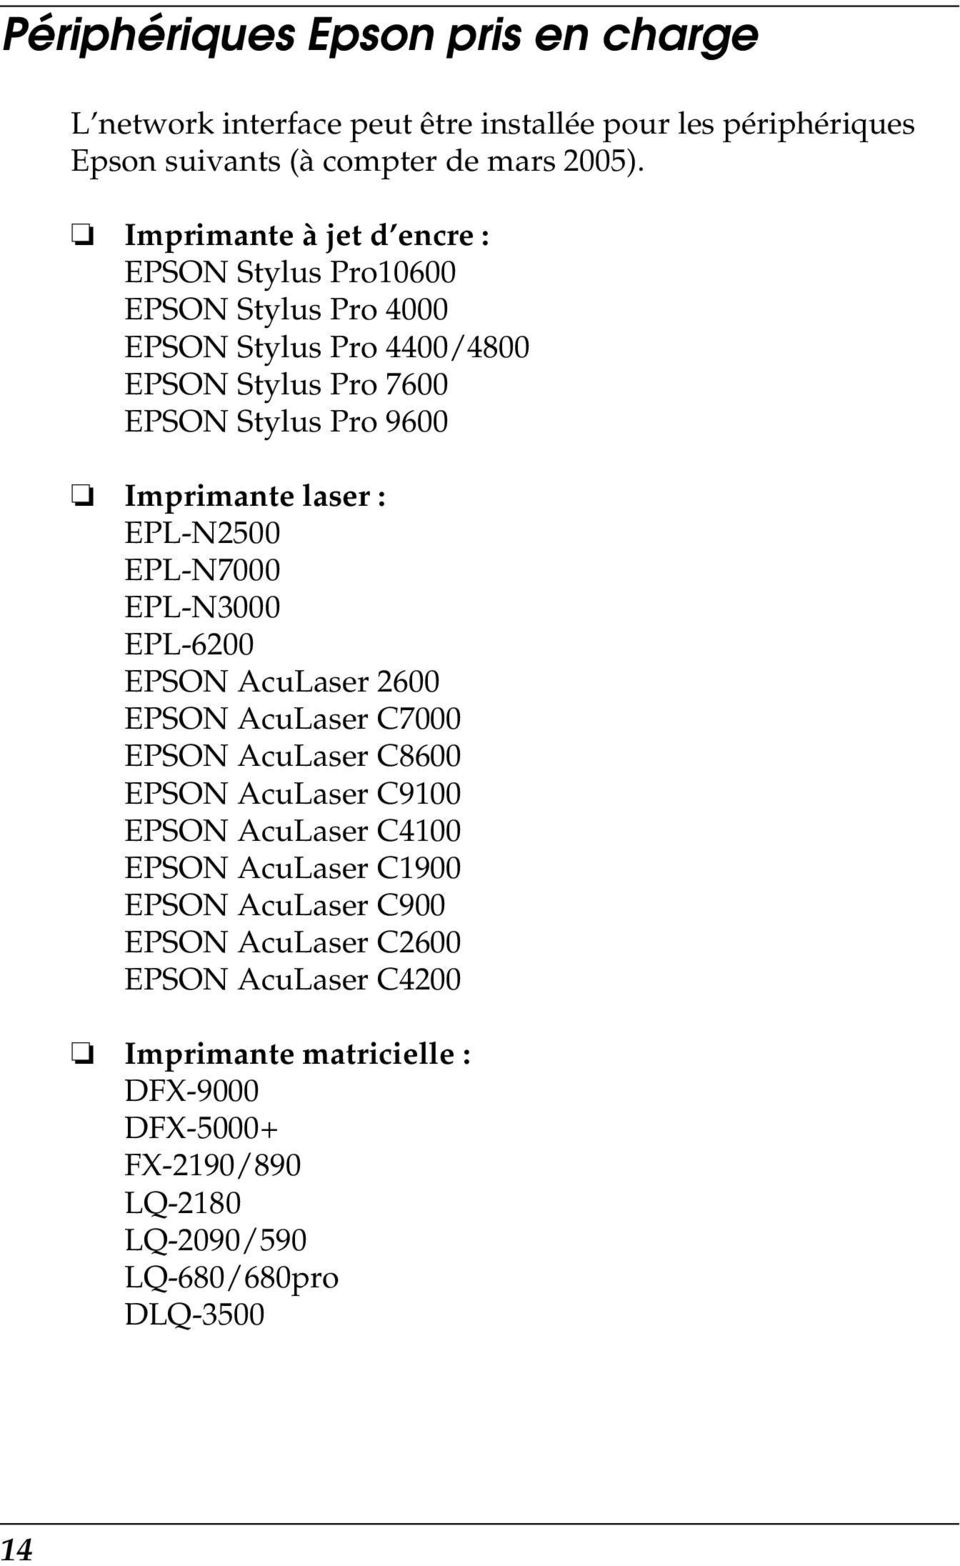 laser : EPL-N2500 EPL-N7000 EPL-N3000 EPL-6200 EPSON AcuLaser 2600 EPSON AcuLaser C7000 EPSON AcuLaser C8600 EPSON AcuLaser C9100 EPSON AcuLaser C4100 EPSON